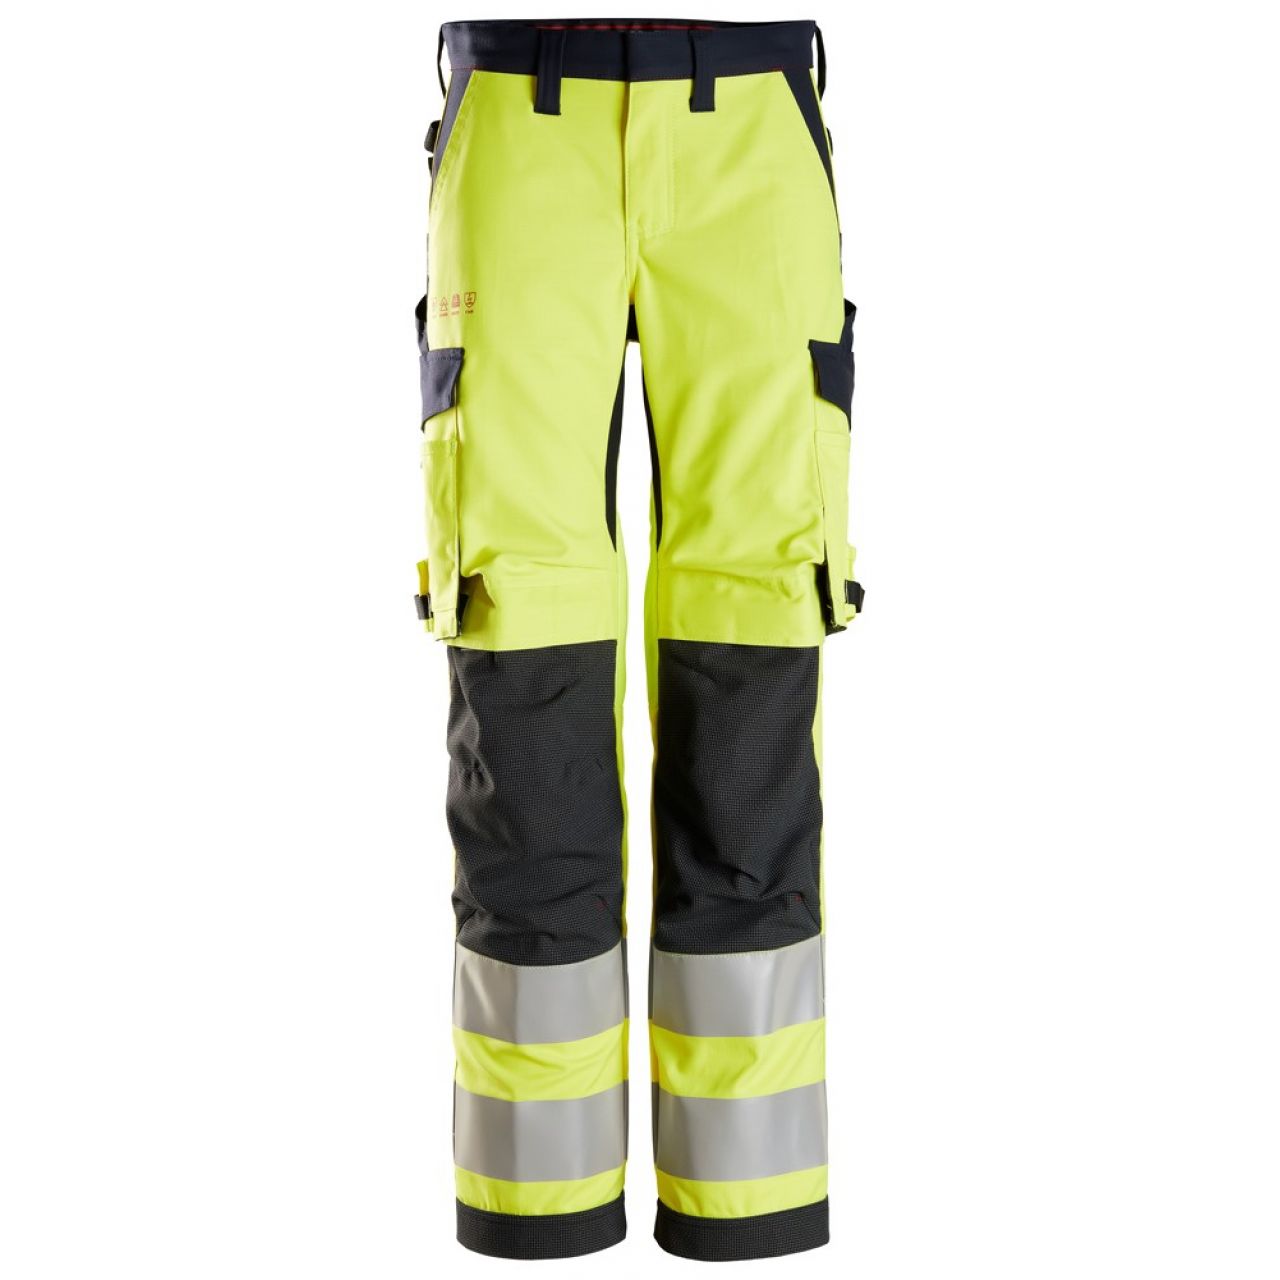 6760 Pantalones largos de trabajo de alta visibilidad clase 2 para mujer ProtecWork amarillo-azul marino talla 92